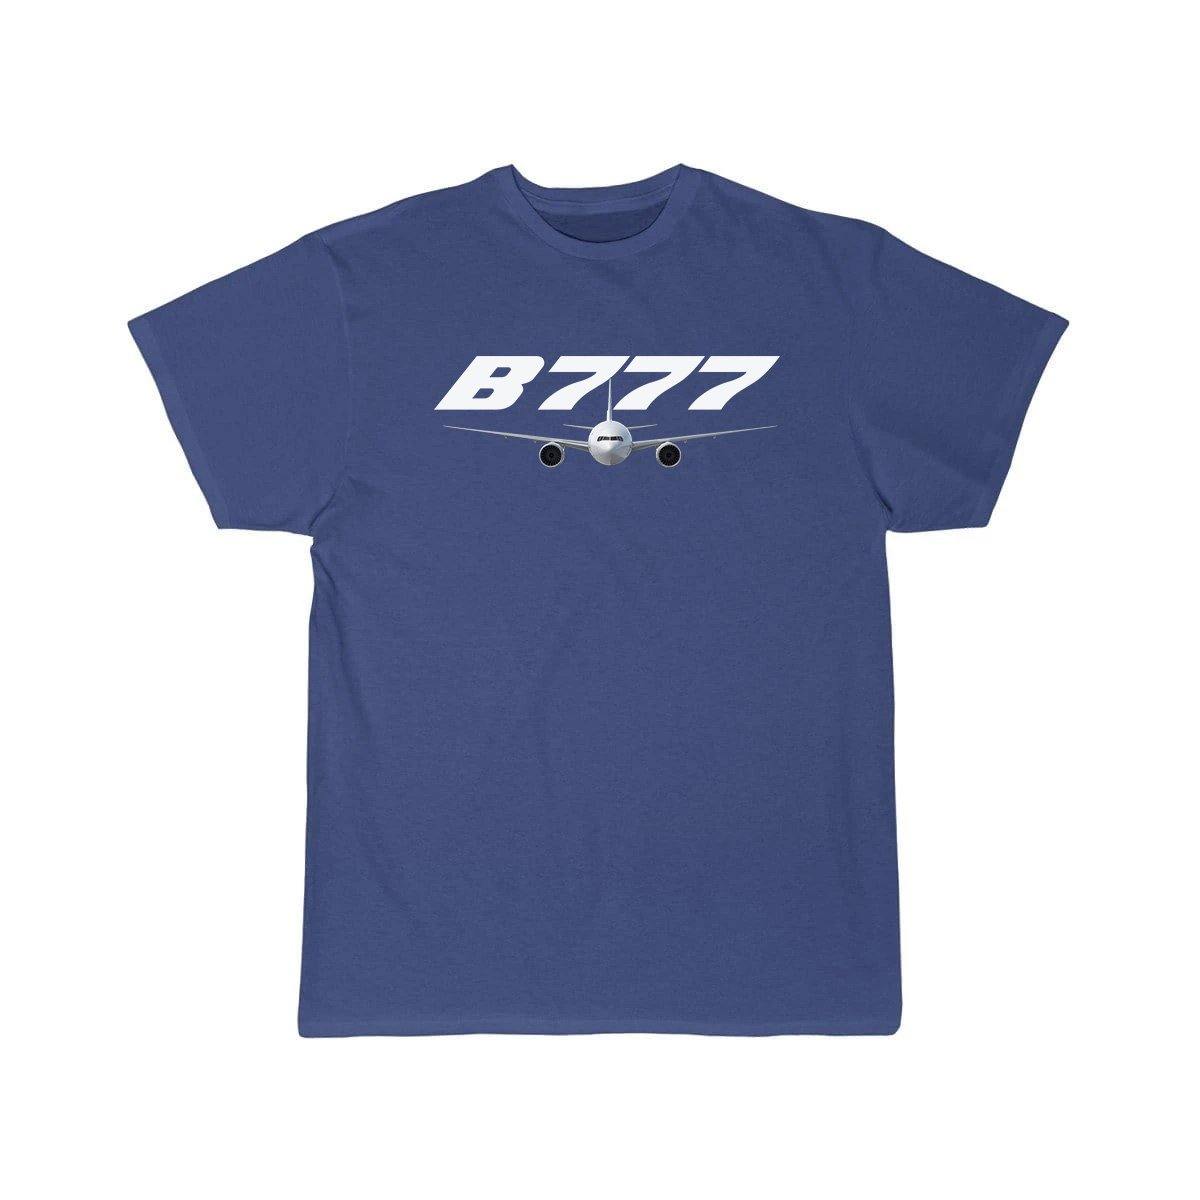 B777  DESIGNED T-SHIRT THE AV8R